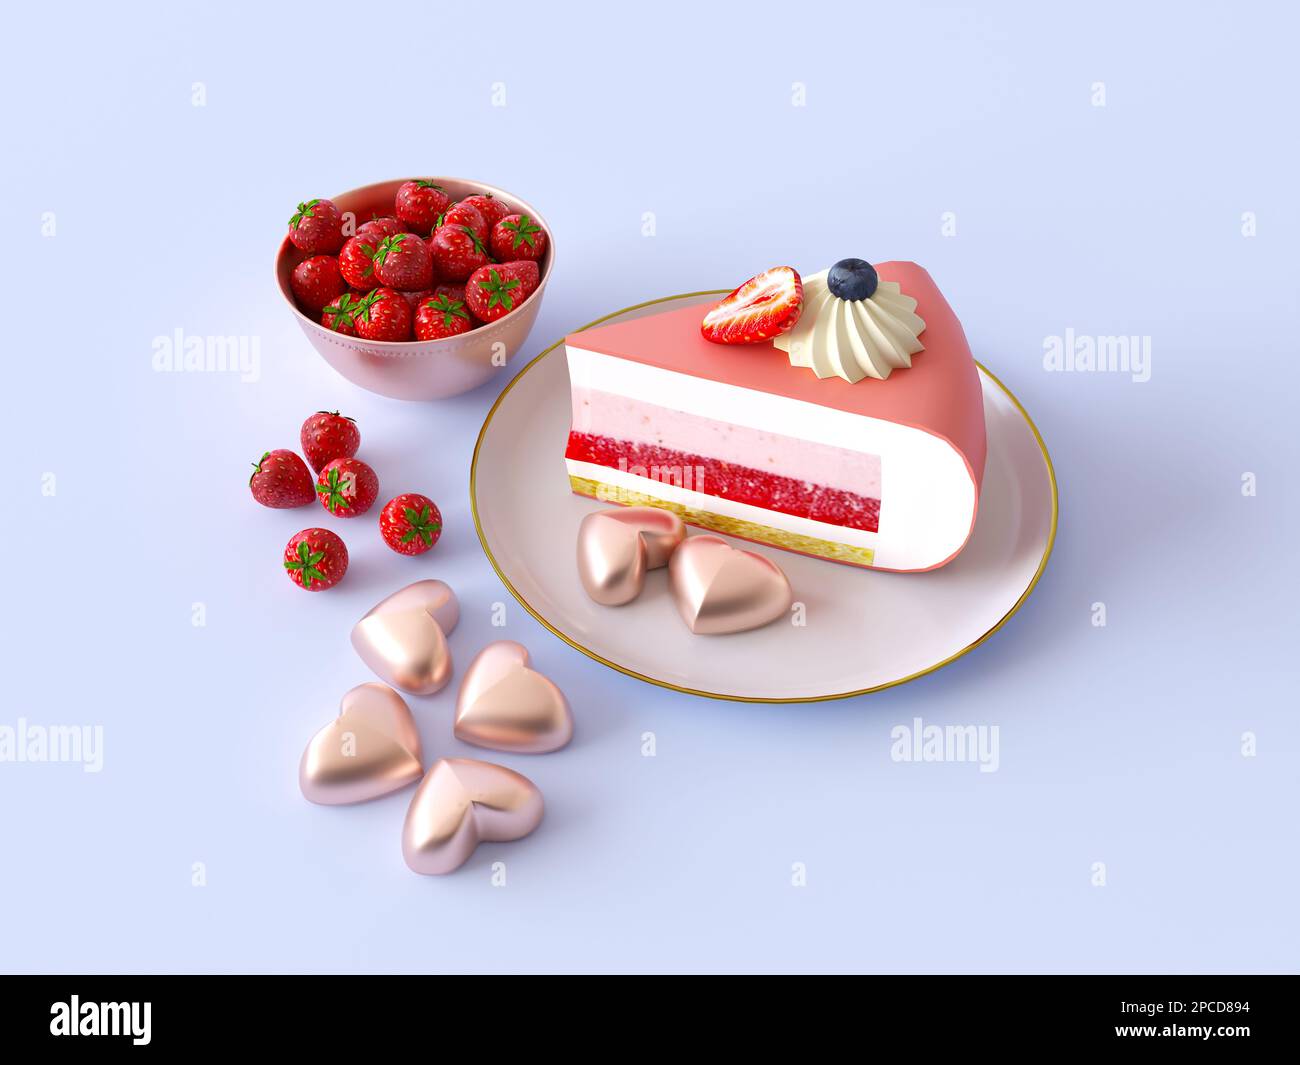 Ein Stück Kuchen mit Spiegelglasur auf dem Teller, dekoriert mit Beeren und Merengue. Herzförmige goldene Kekse, Schüssel mit frischen wilden Erdbeeren. Stockfoto